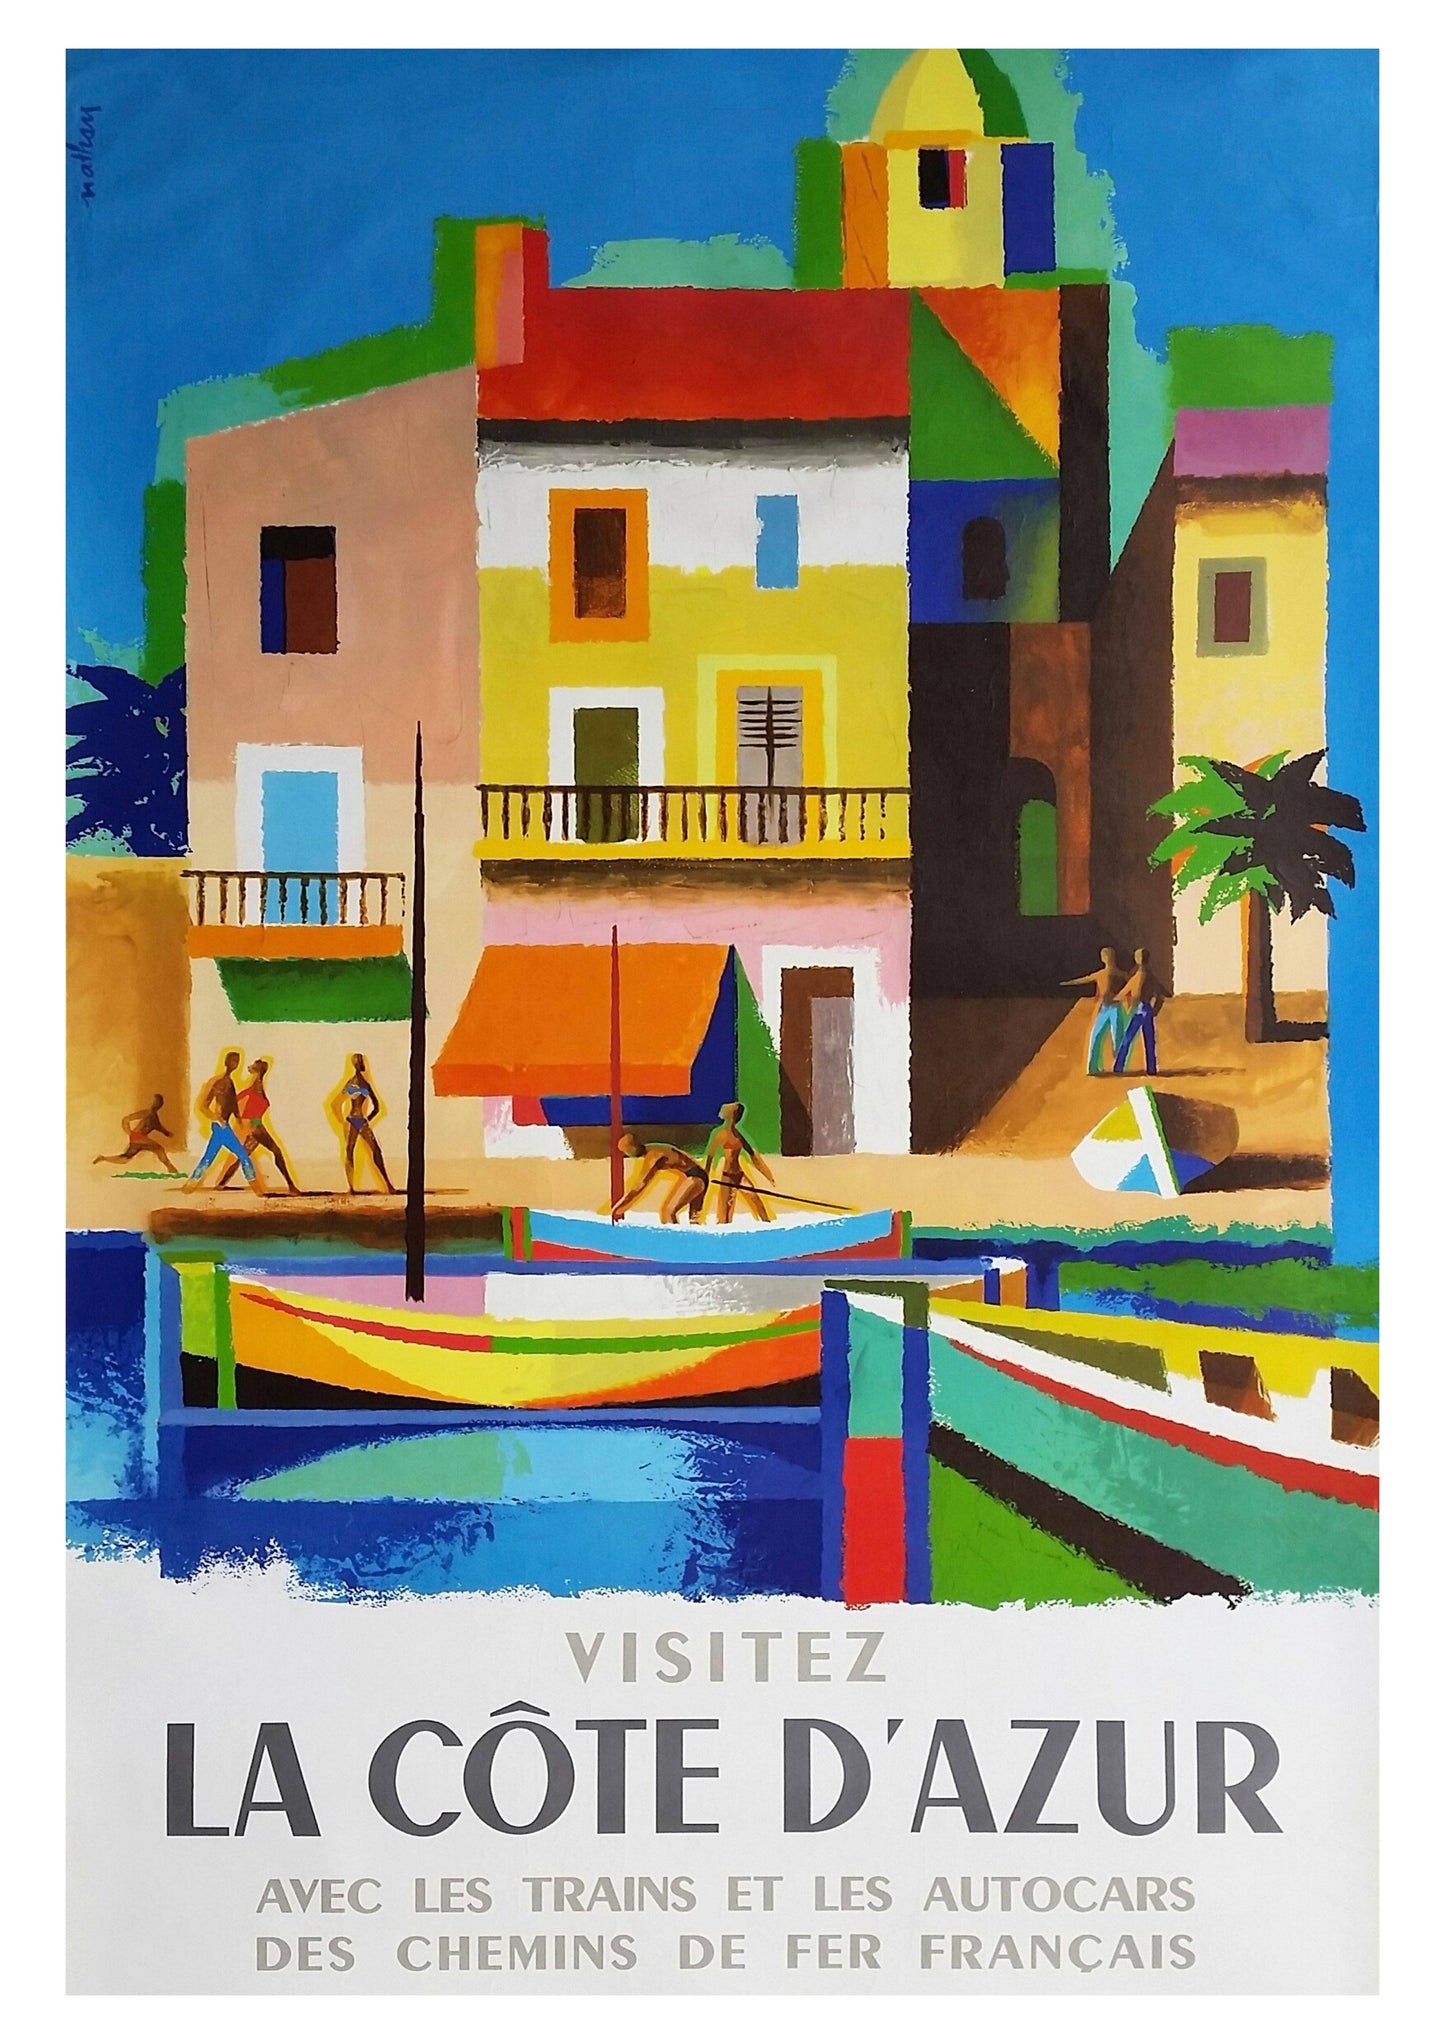 VISITEZ LA COTE D'AZUR: Vintage Travel Print Poster